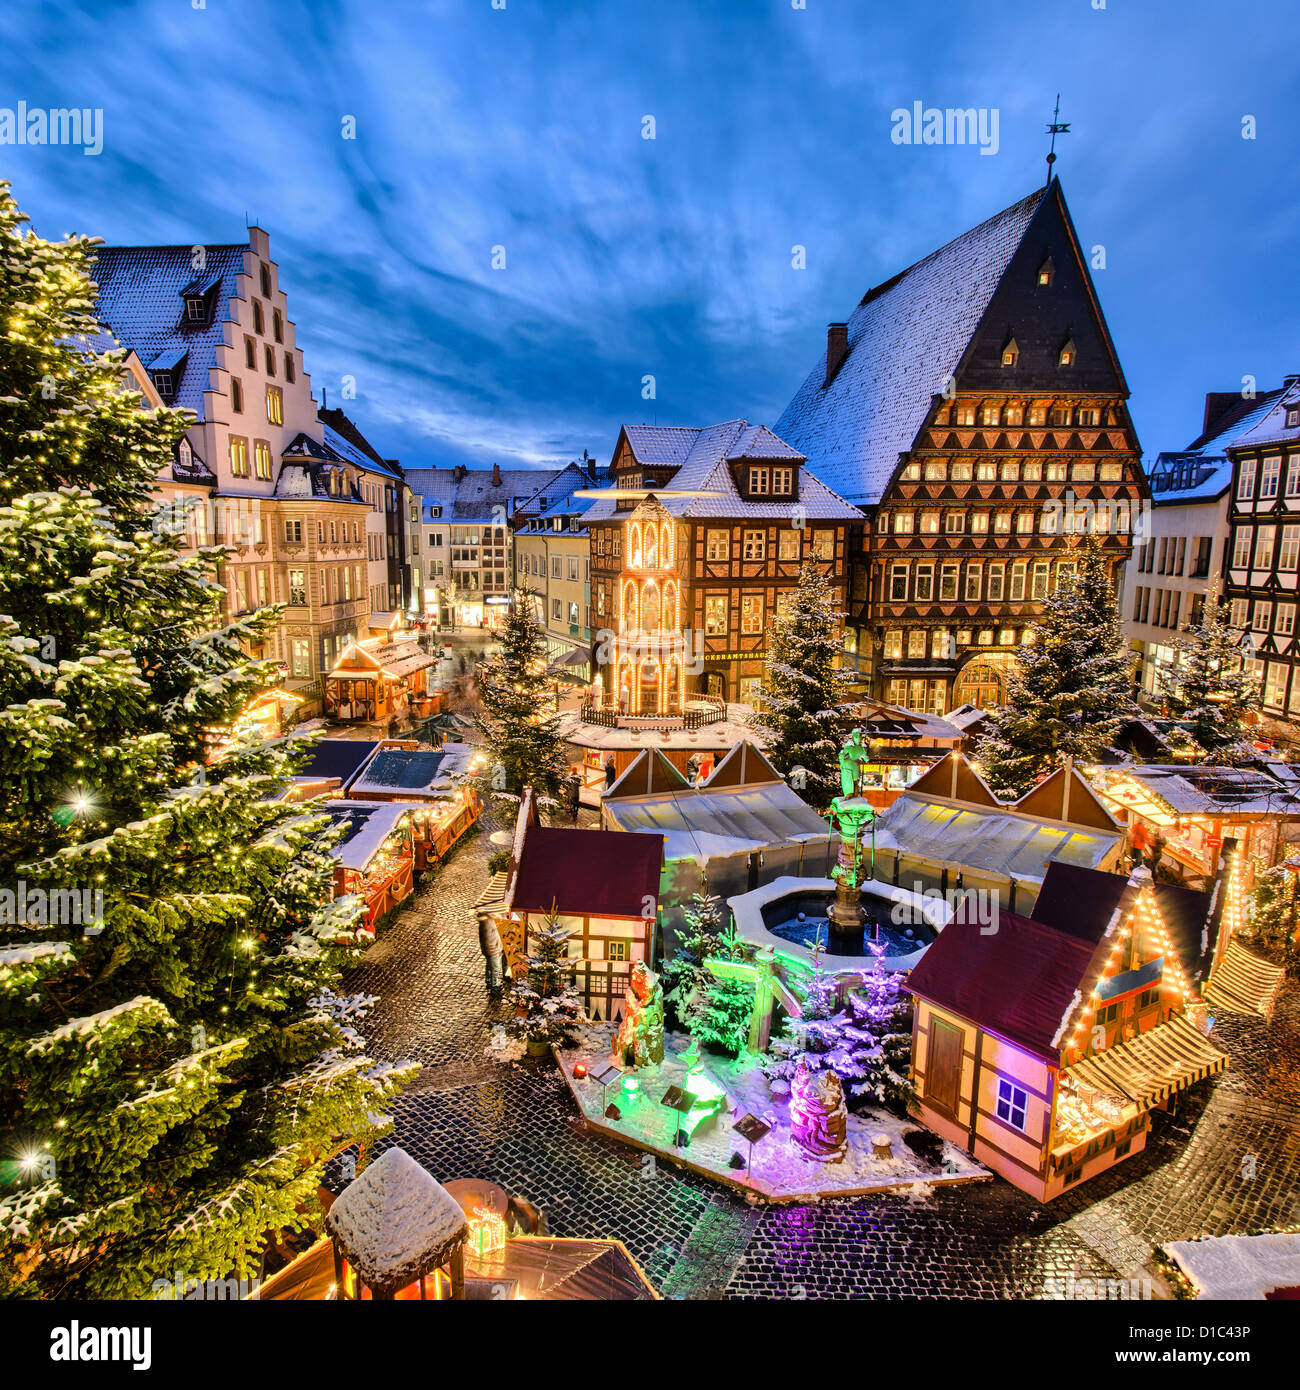 Marché de Noël sur la place du marché historique de Hildesheim, Allemagne Banque D'Images